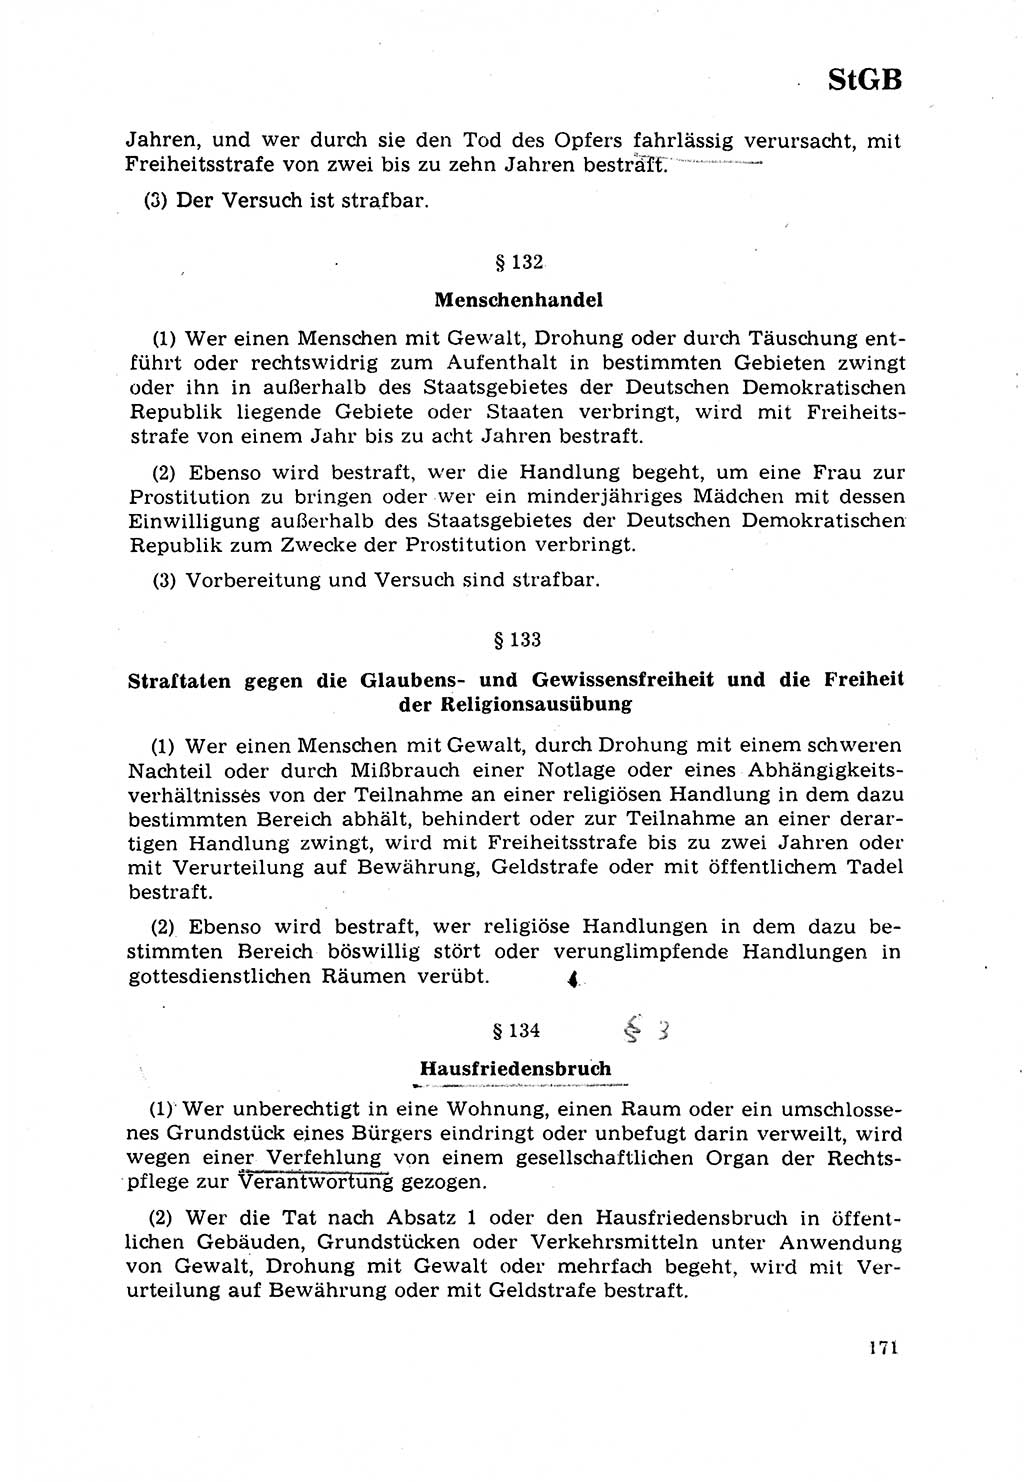 Strafrecht [Deutsche Demokratische Republik (DDR)] 1968, Seite 171 (Strafr. DDR 1968, S. 171)